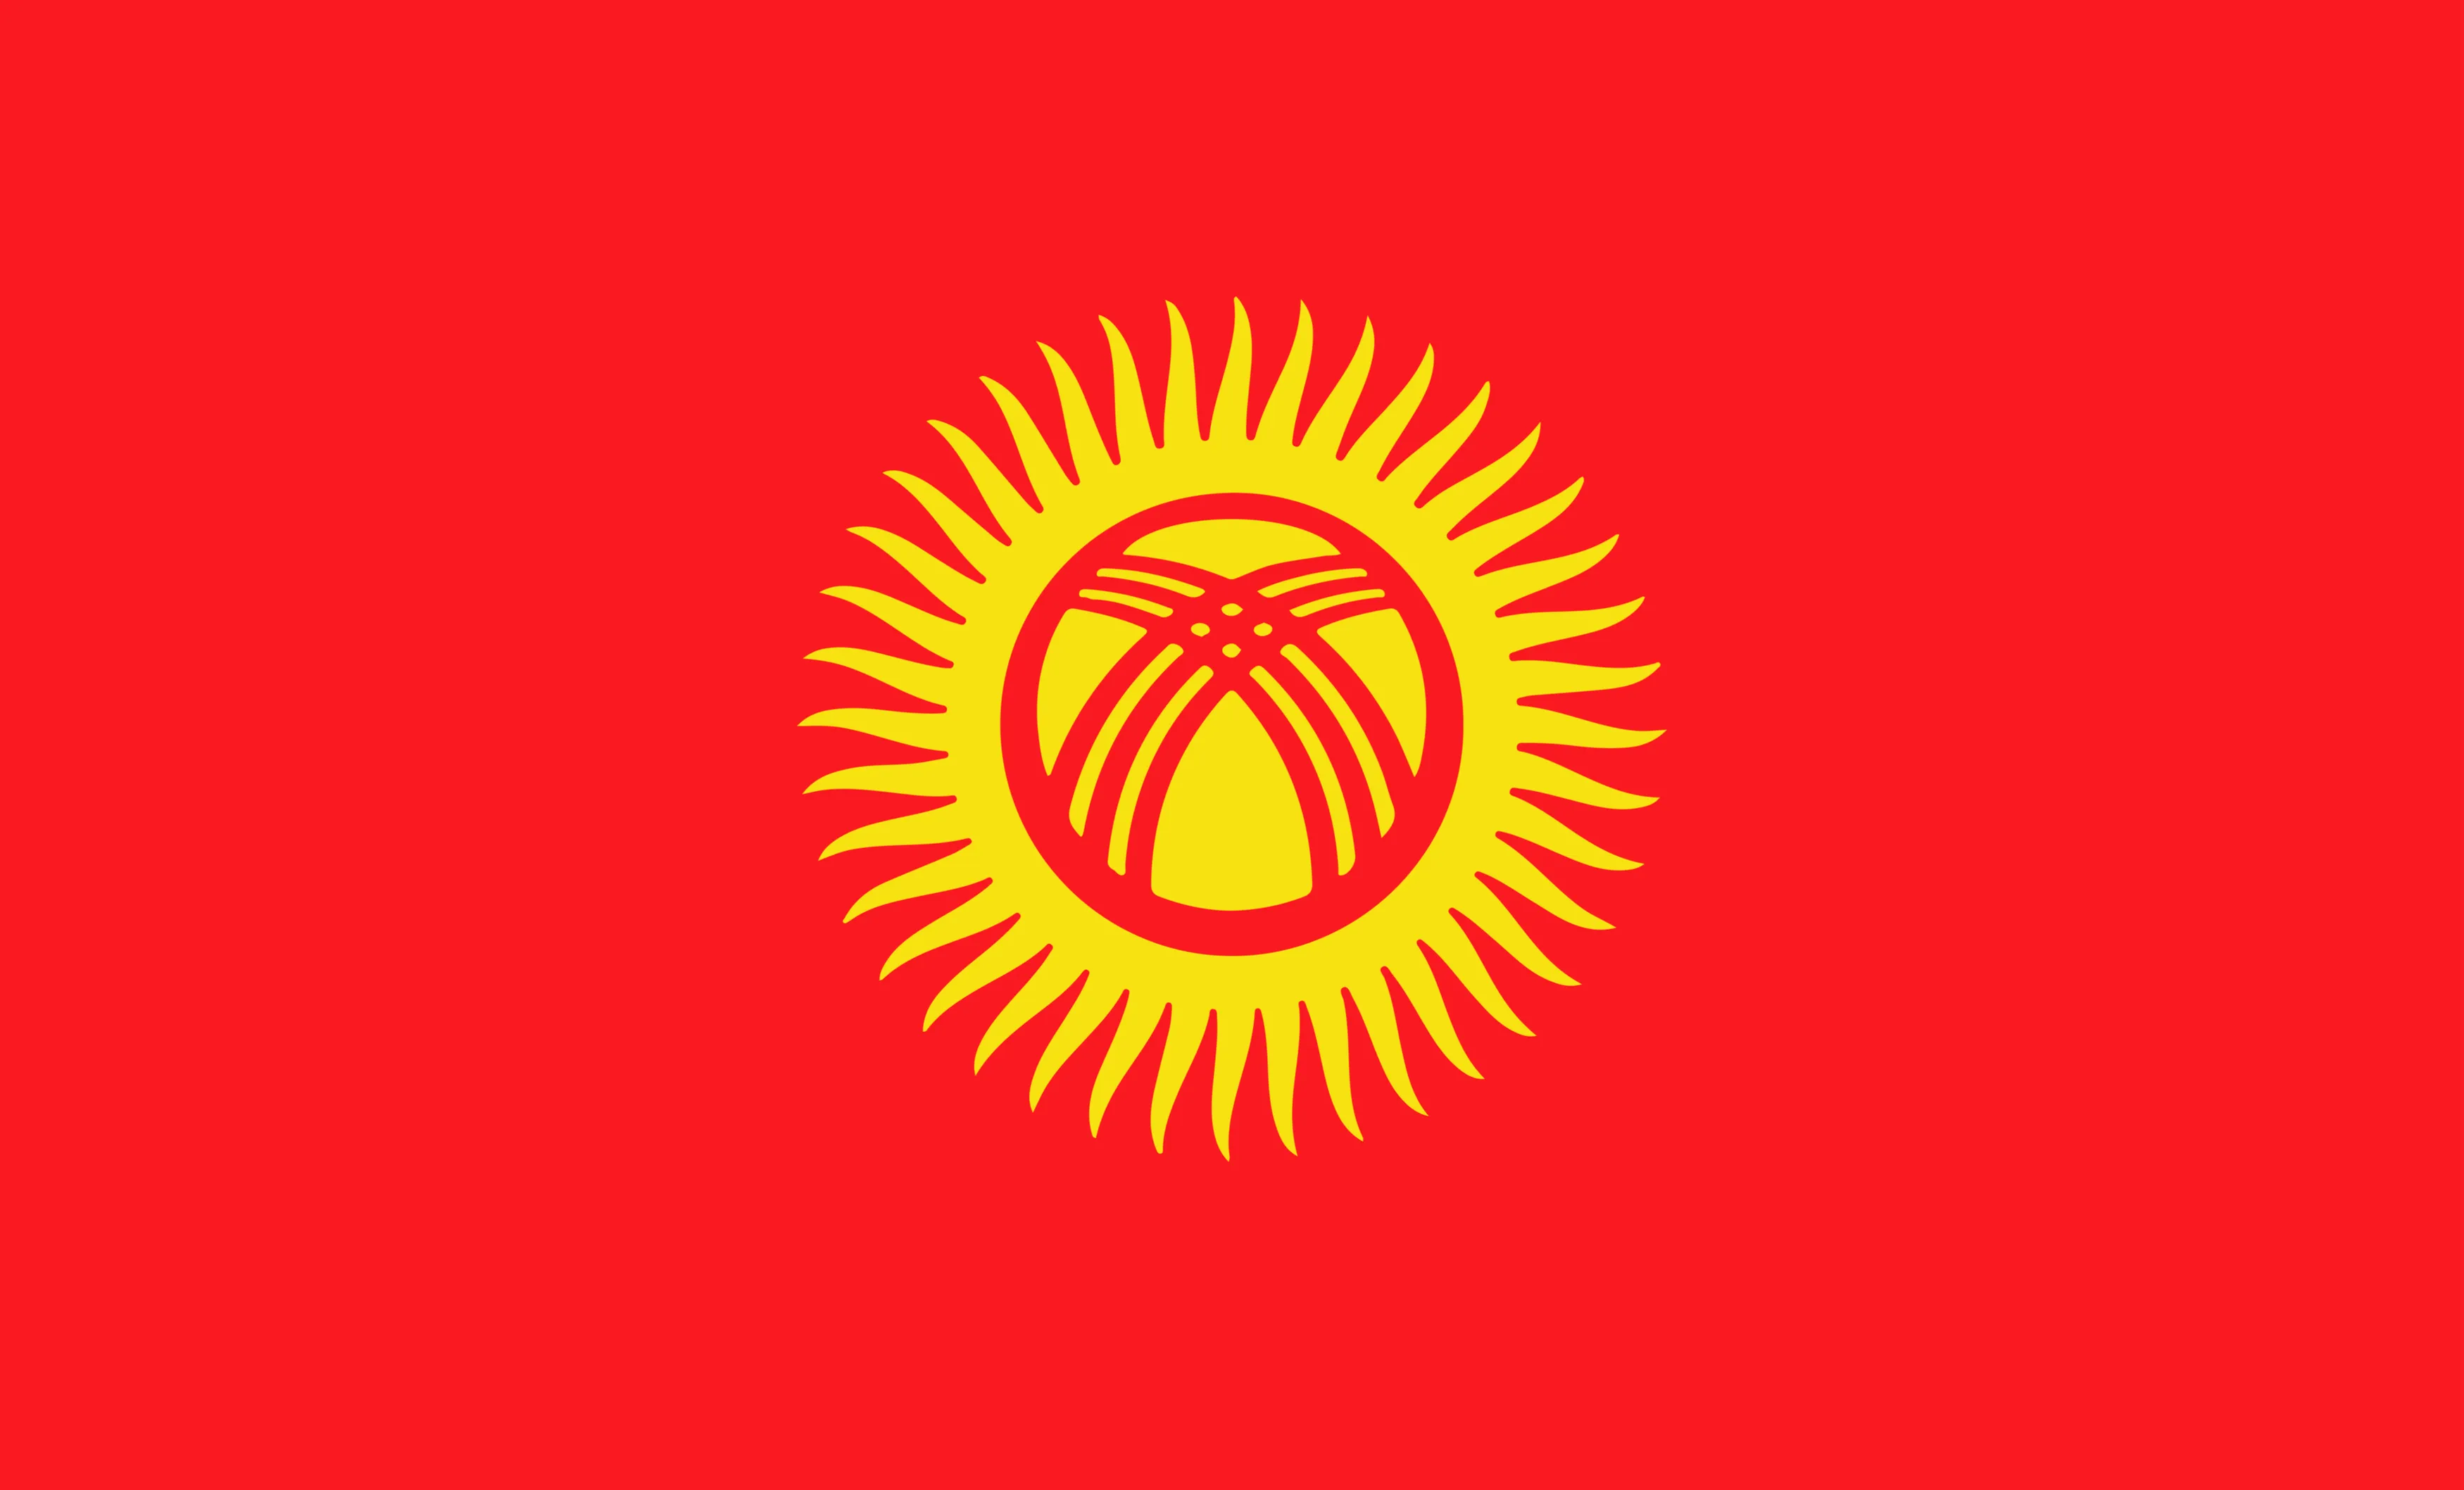 Kyrgyzstan 